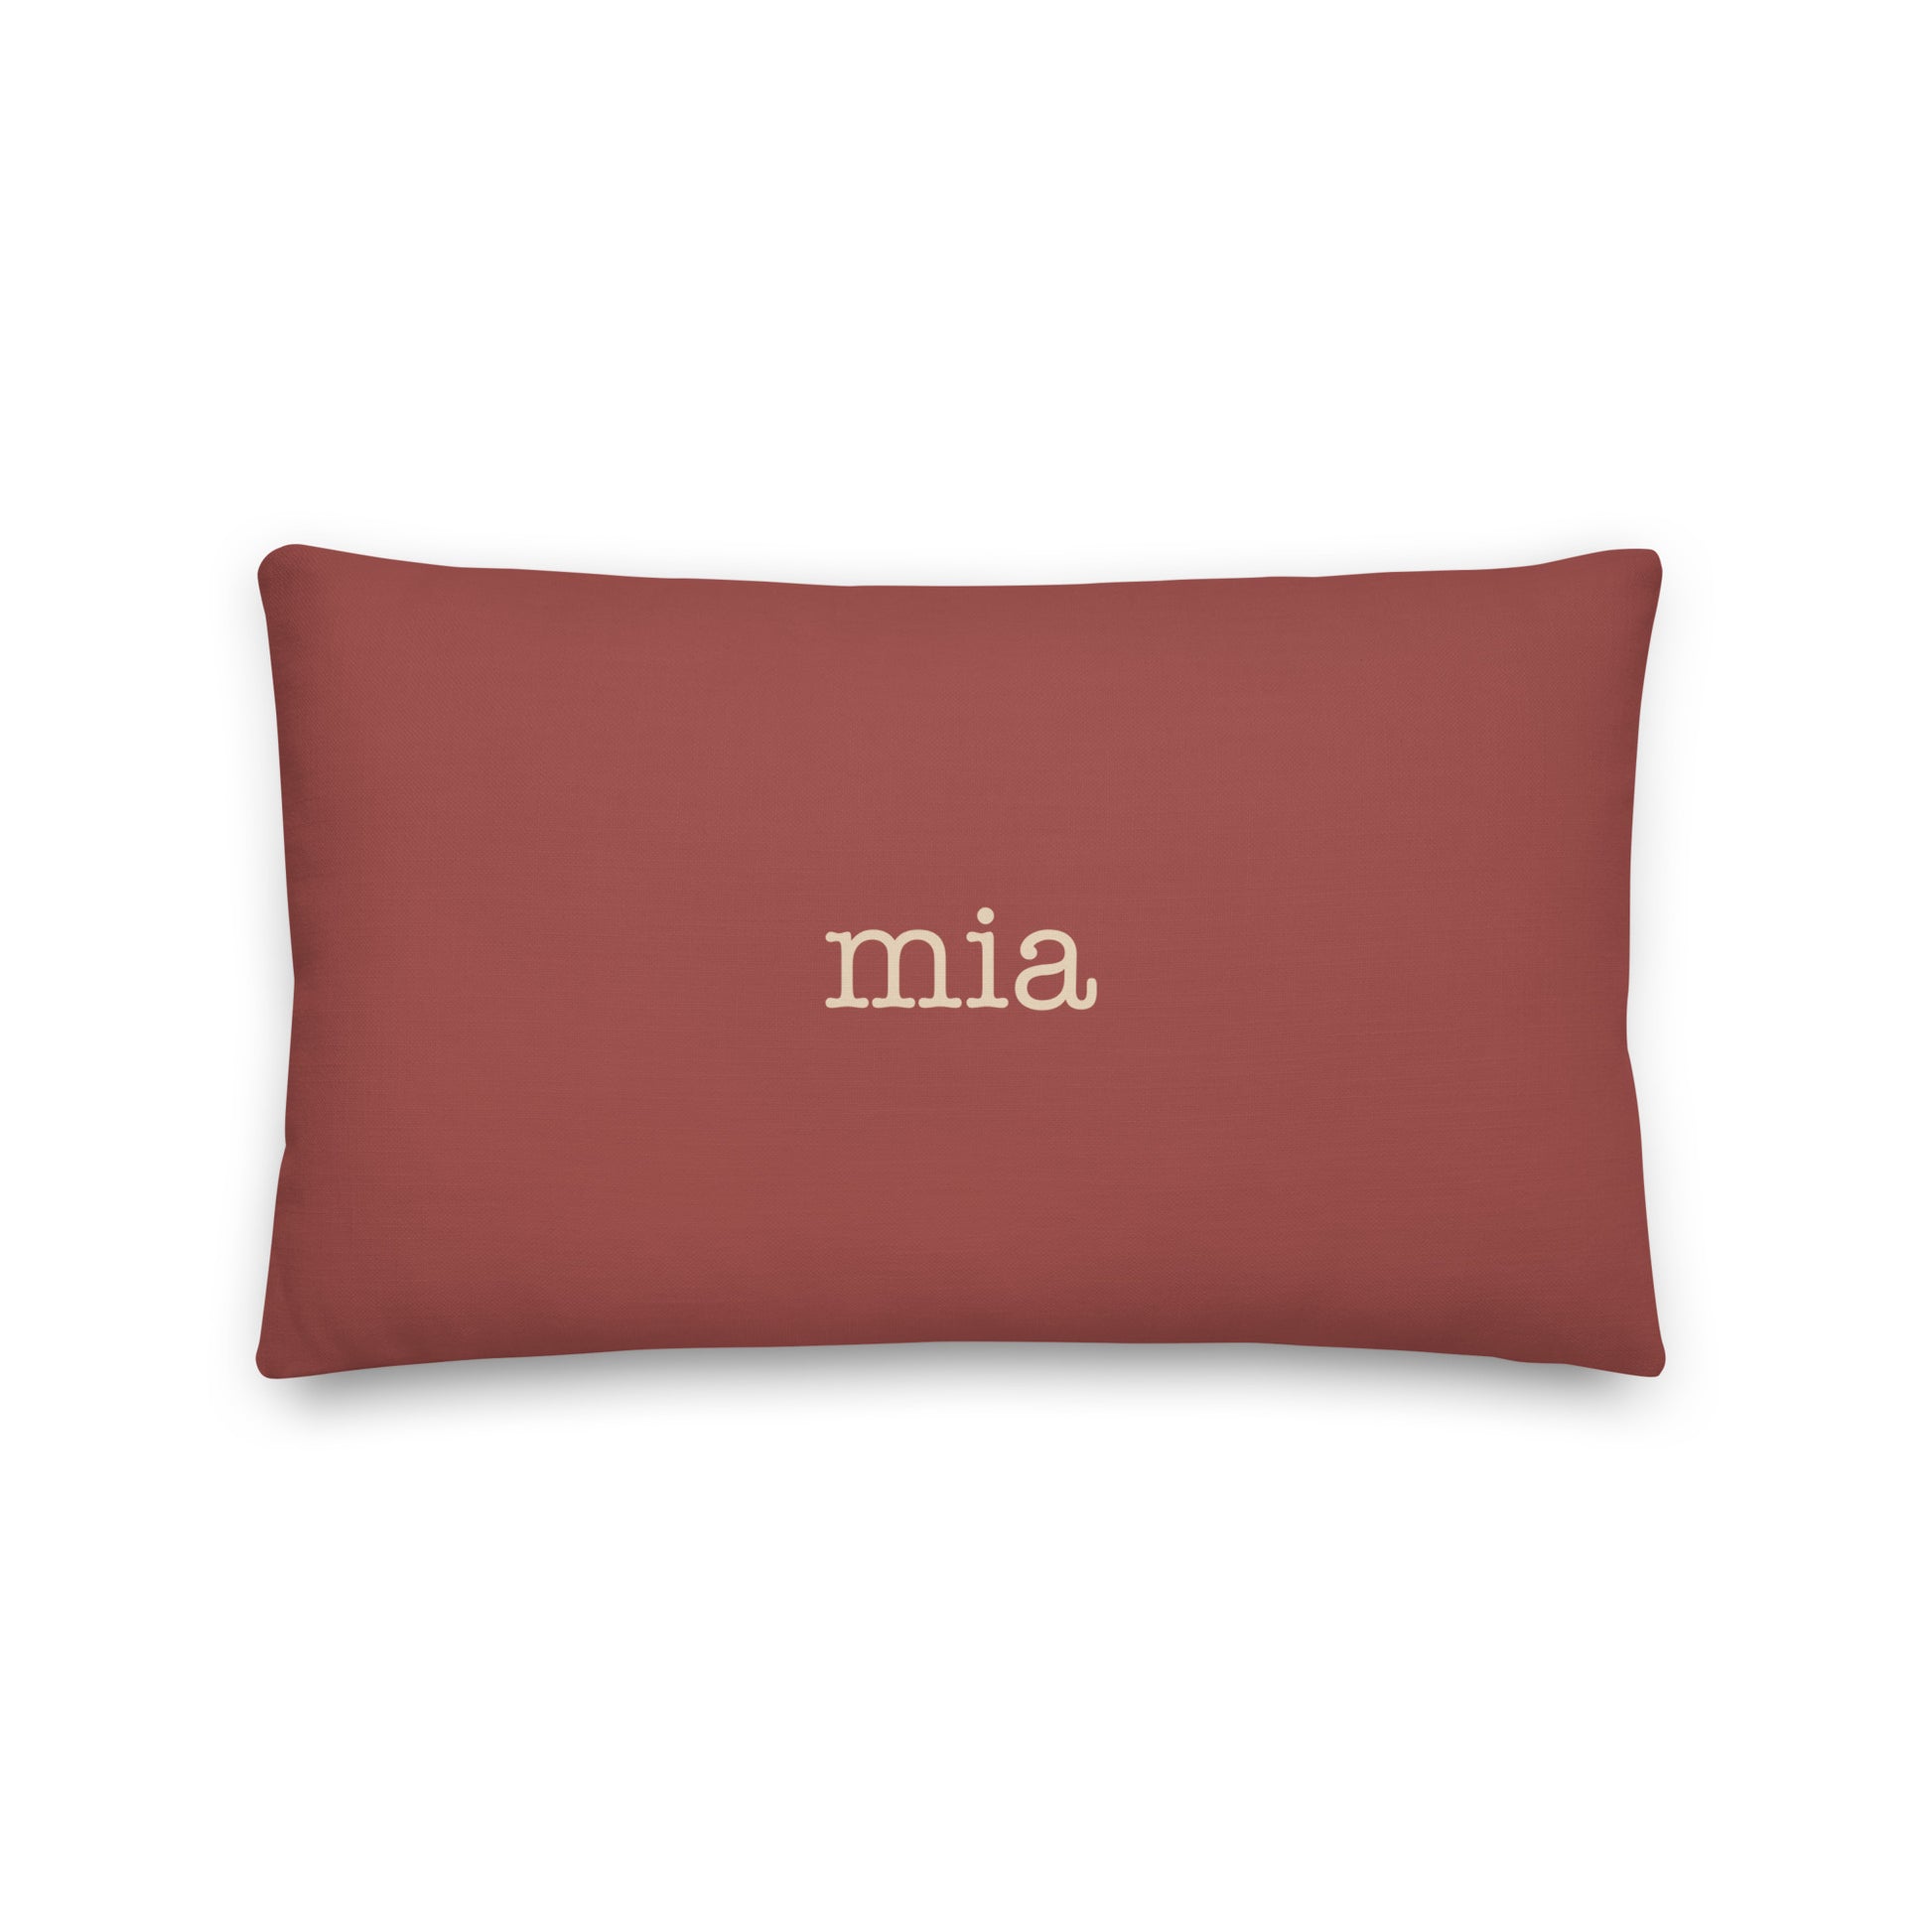 Typewriter Pillow - Terra Cotta • MIA Miami • YHM Designs - Image 02